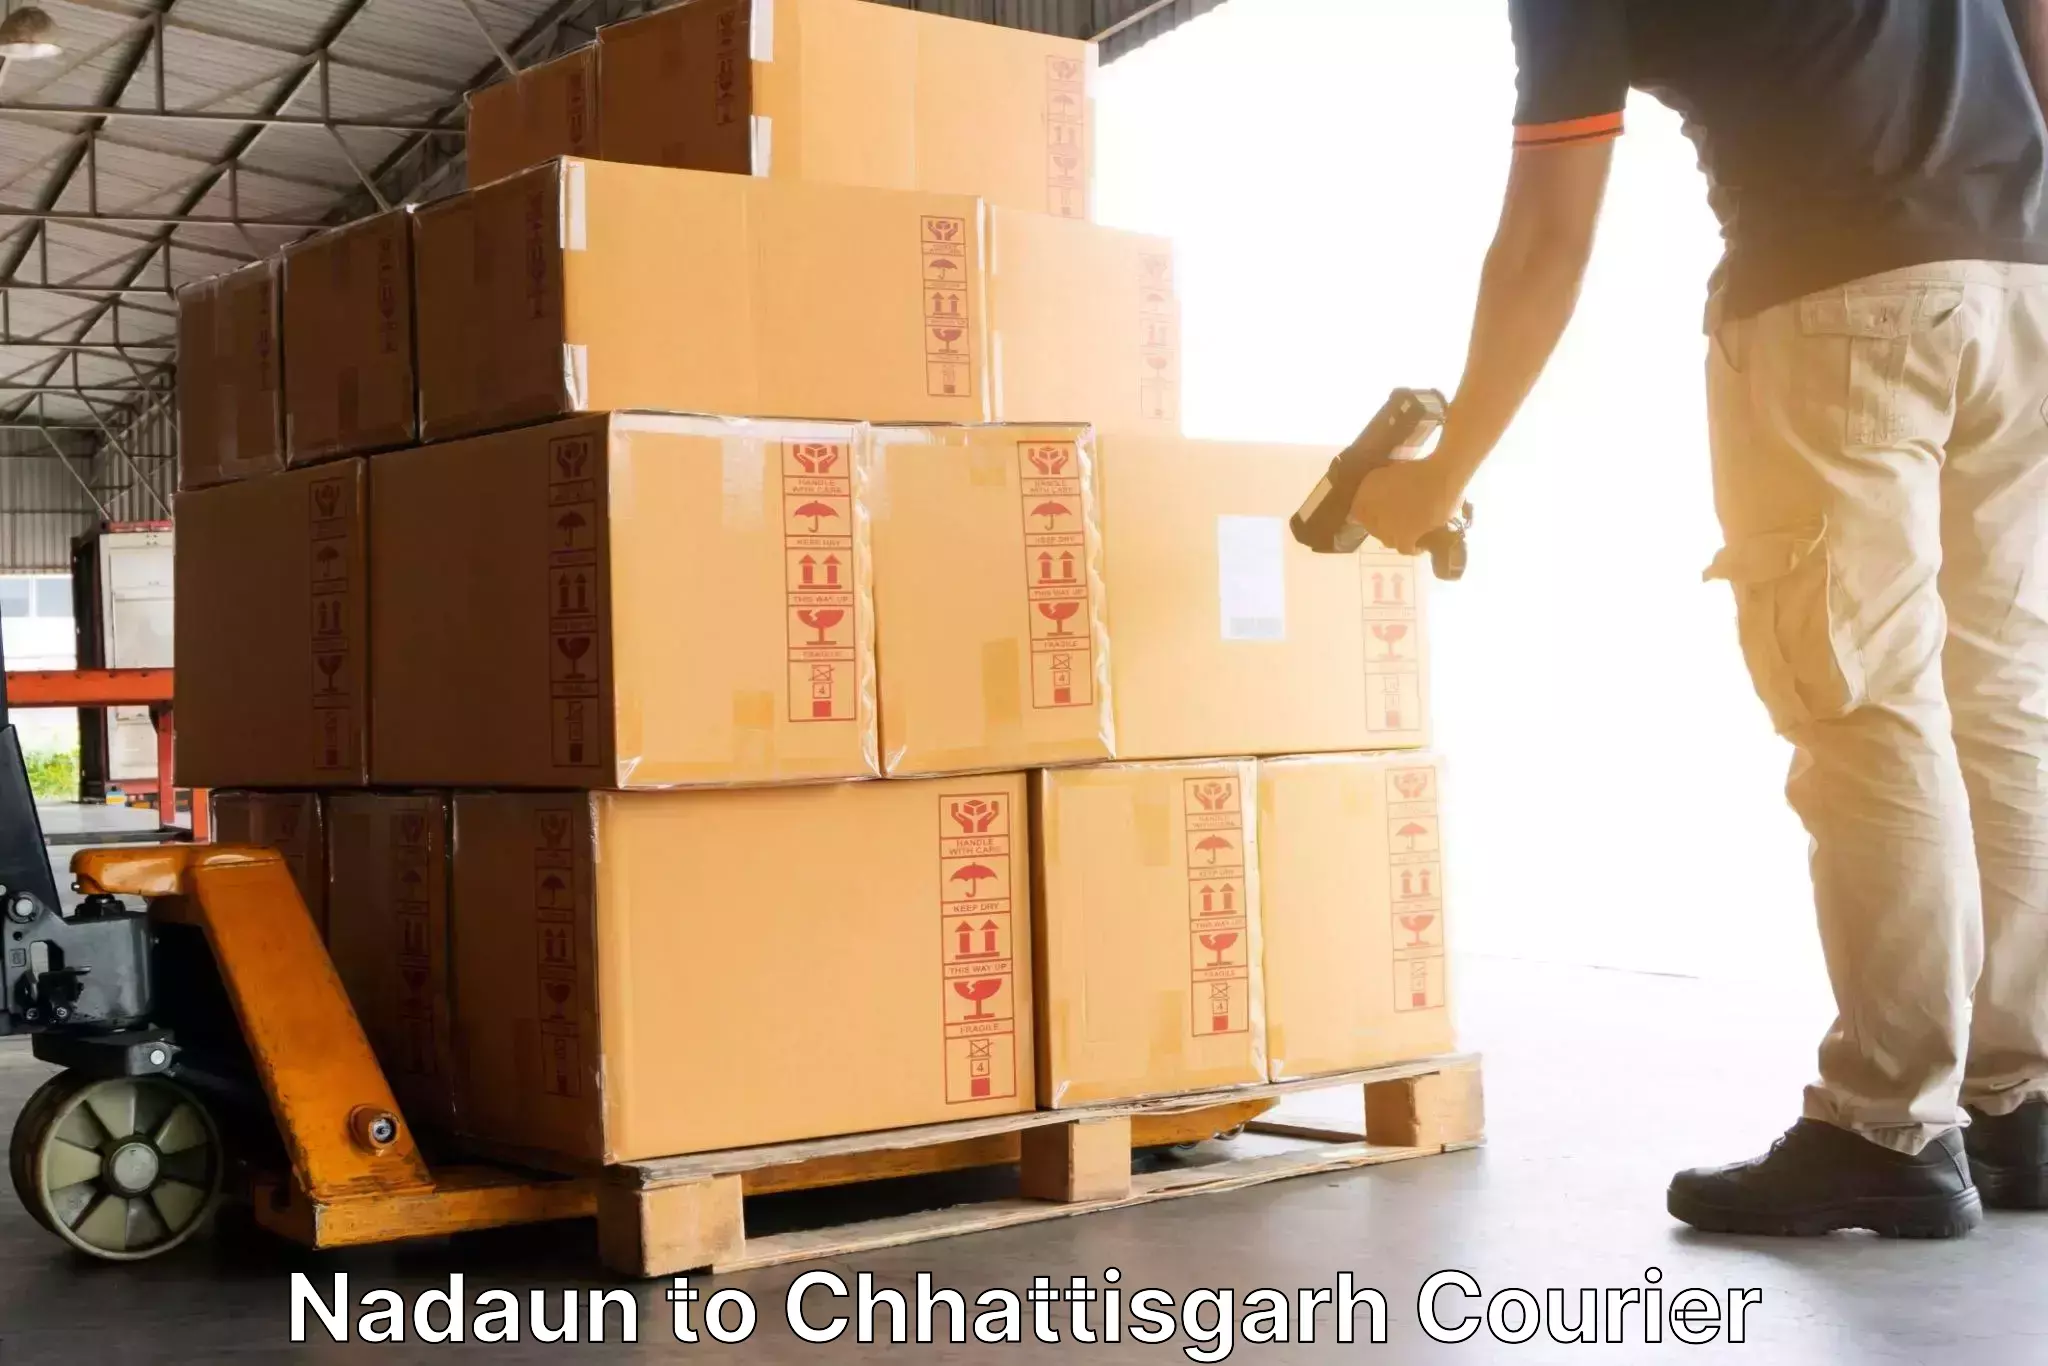 Customer-centric shipping Nadaun to Wadrafnagar